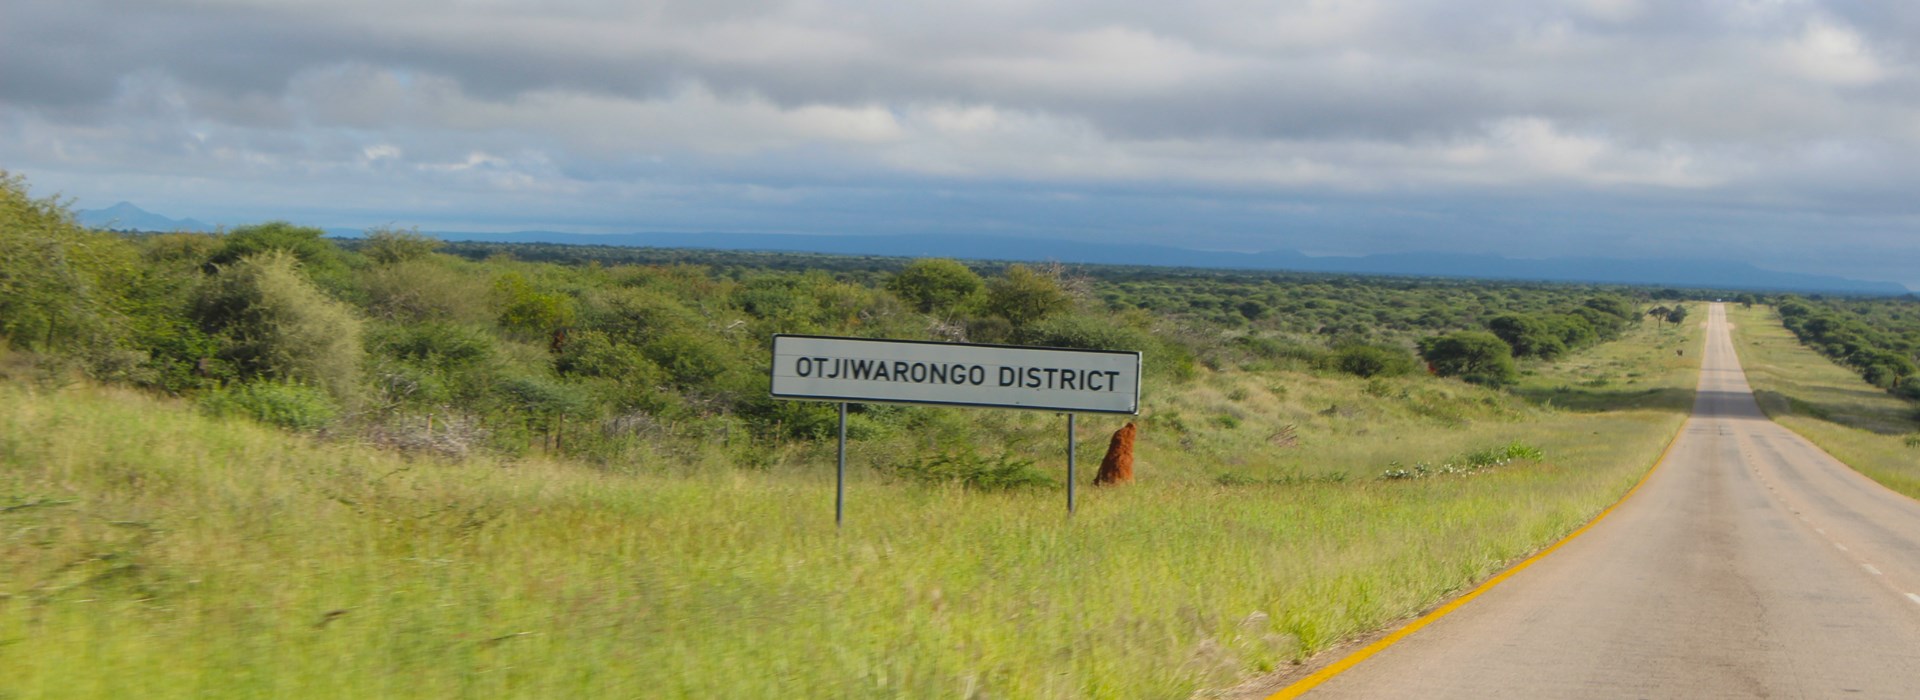 Visiter Otjiwarongo - Namibie